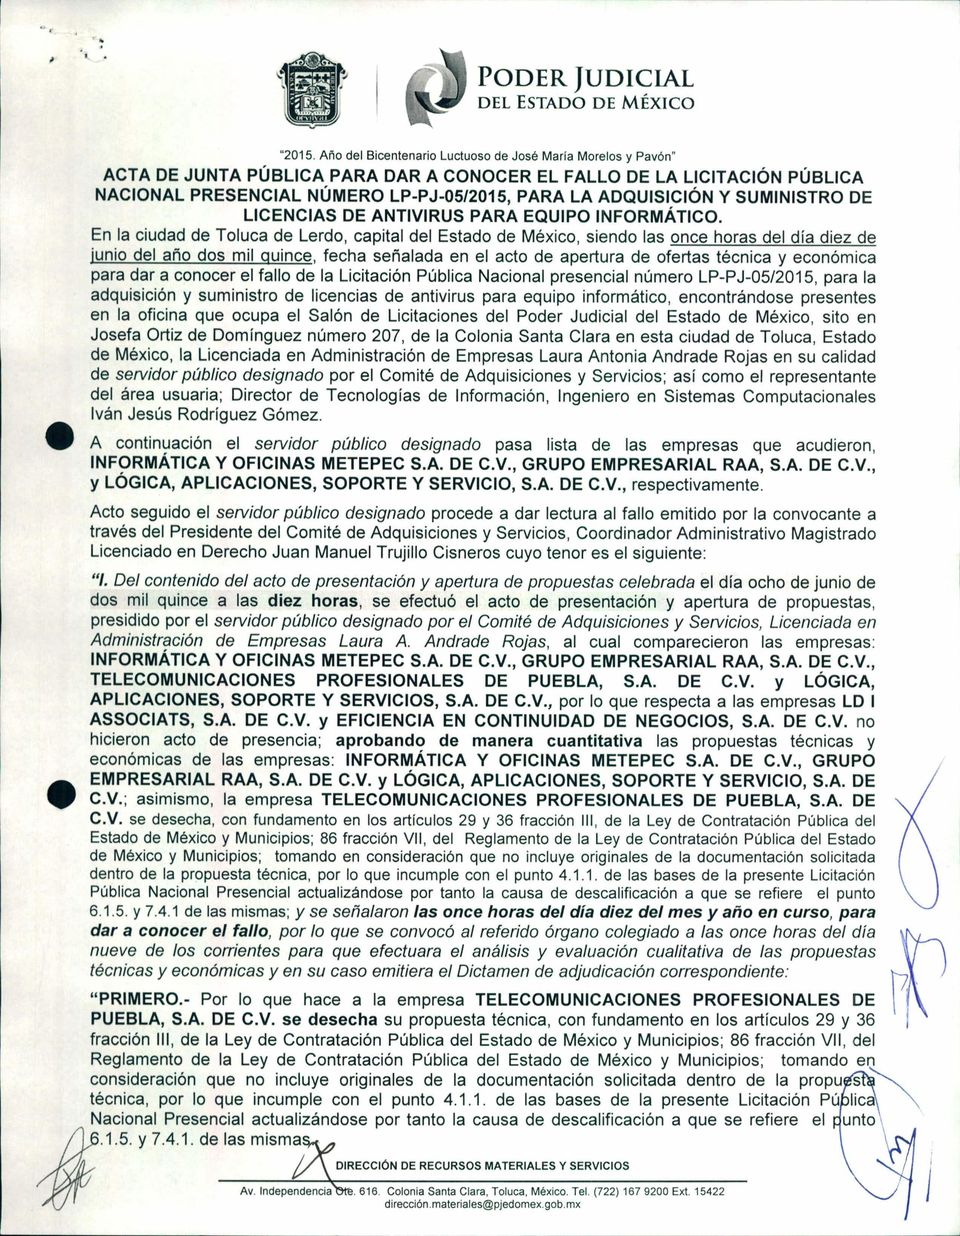 SUMINISTRO DE LICENCIAS DE ANTIVIRUS PARA EQUIPO INFORMÁTICO.